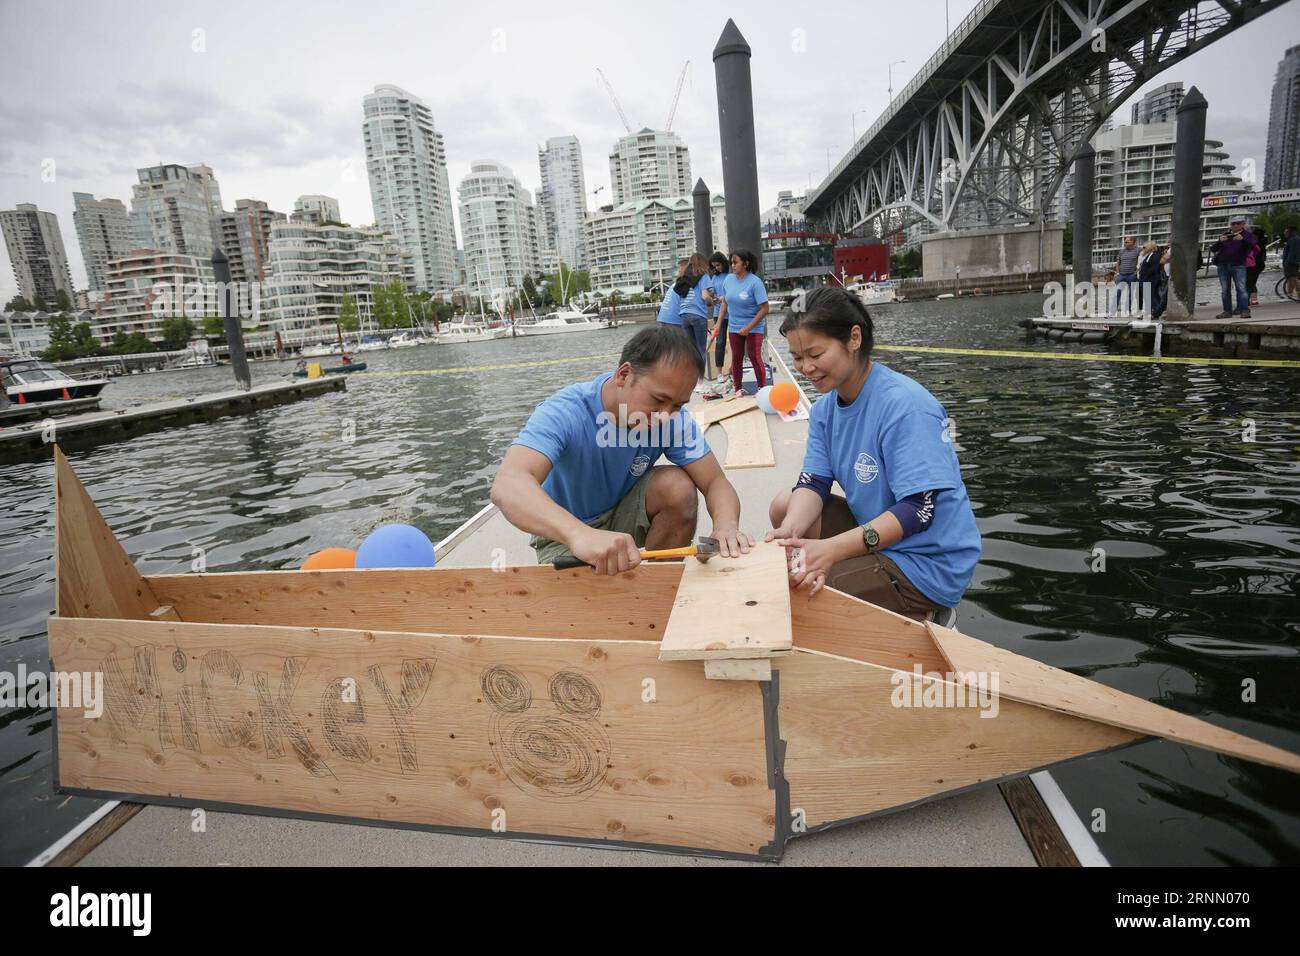 (170618) -- VANCOUVER, 18 giugno 2017 -- i membri del team costruiscono la loro barca in compensato insieme durante la 20th Plywood Cup Challenge a Vancouver, Canada, 17 giugno 2017. La Plywood Cup Challenge è un divertente evento di beneficenza a cui i partecipanti hanno a disposizione solo 90 minuti per costruire una barca per la gara utilizzando due strati di compensato, unghie e un rotolo di nastro adesivo. ) (Zxj) CANADA-VANCOUVER-PLYWOOD BOAT RACE LiangxSen PUBLICATIONxNOTxINxCHN Vancouver 18 giugno 2017 i membri del team COSTRUISCONO la loro barca in compensato insieme durante la 20th Plywood Cup Challenge a Vancouver Canada 17 giugno 2017 la Plywood Cup Challenge È un divertimento Foto Stock